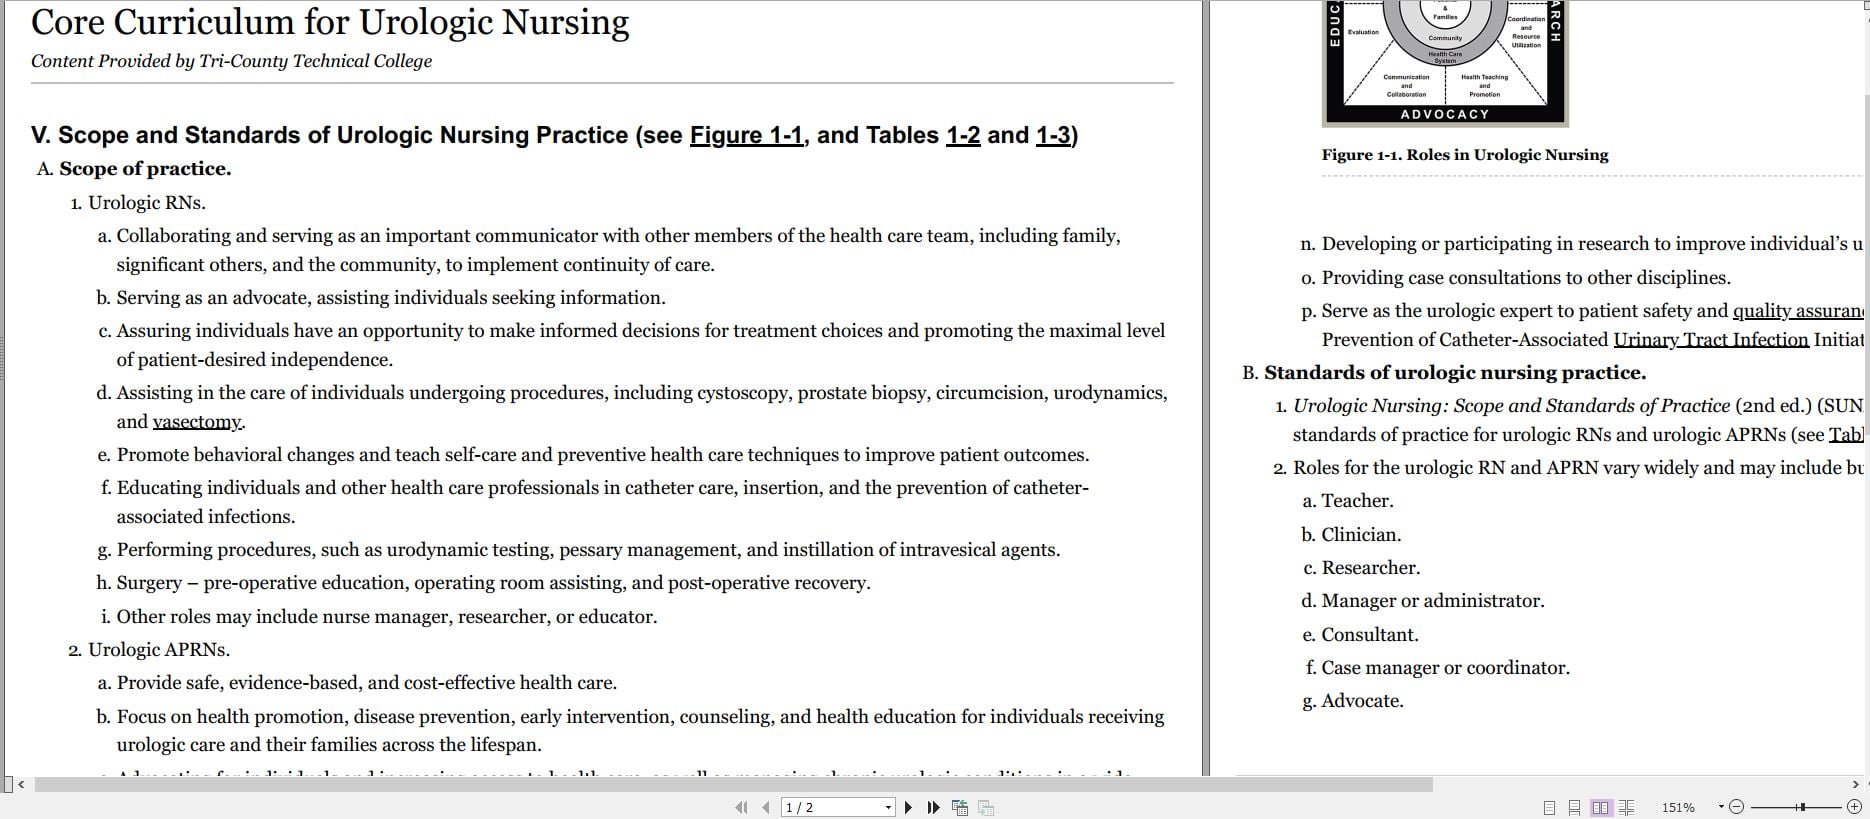 دانلود کتاب Core Curriculum for Urologic Nursing خرید ایبوک Core Curriculum for Urologic Nursing ایبوک برنامه درسی اصلی برای پرستاری اورولوژی کتاب اورولوژی گیگاپیپر